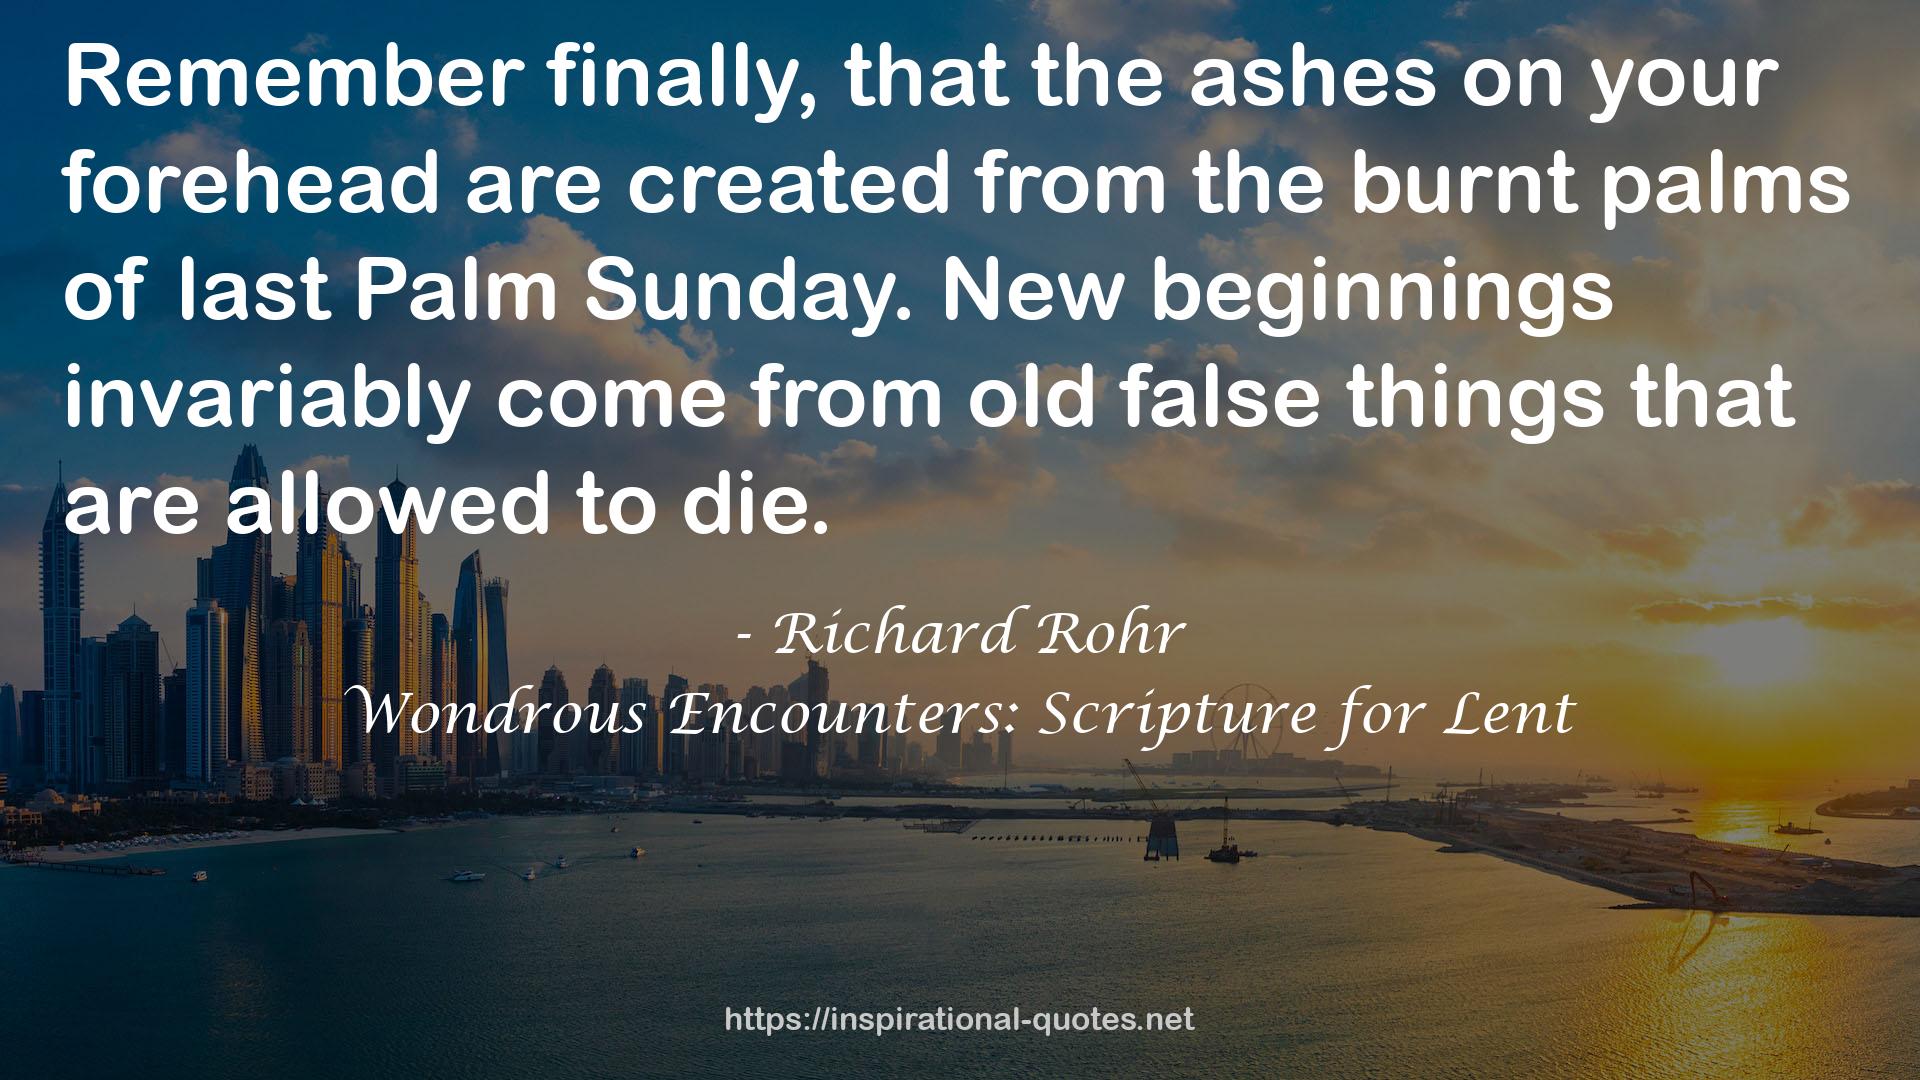 Wondrous Encounters: Scripture for Lent QUOTES